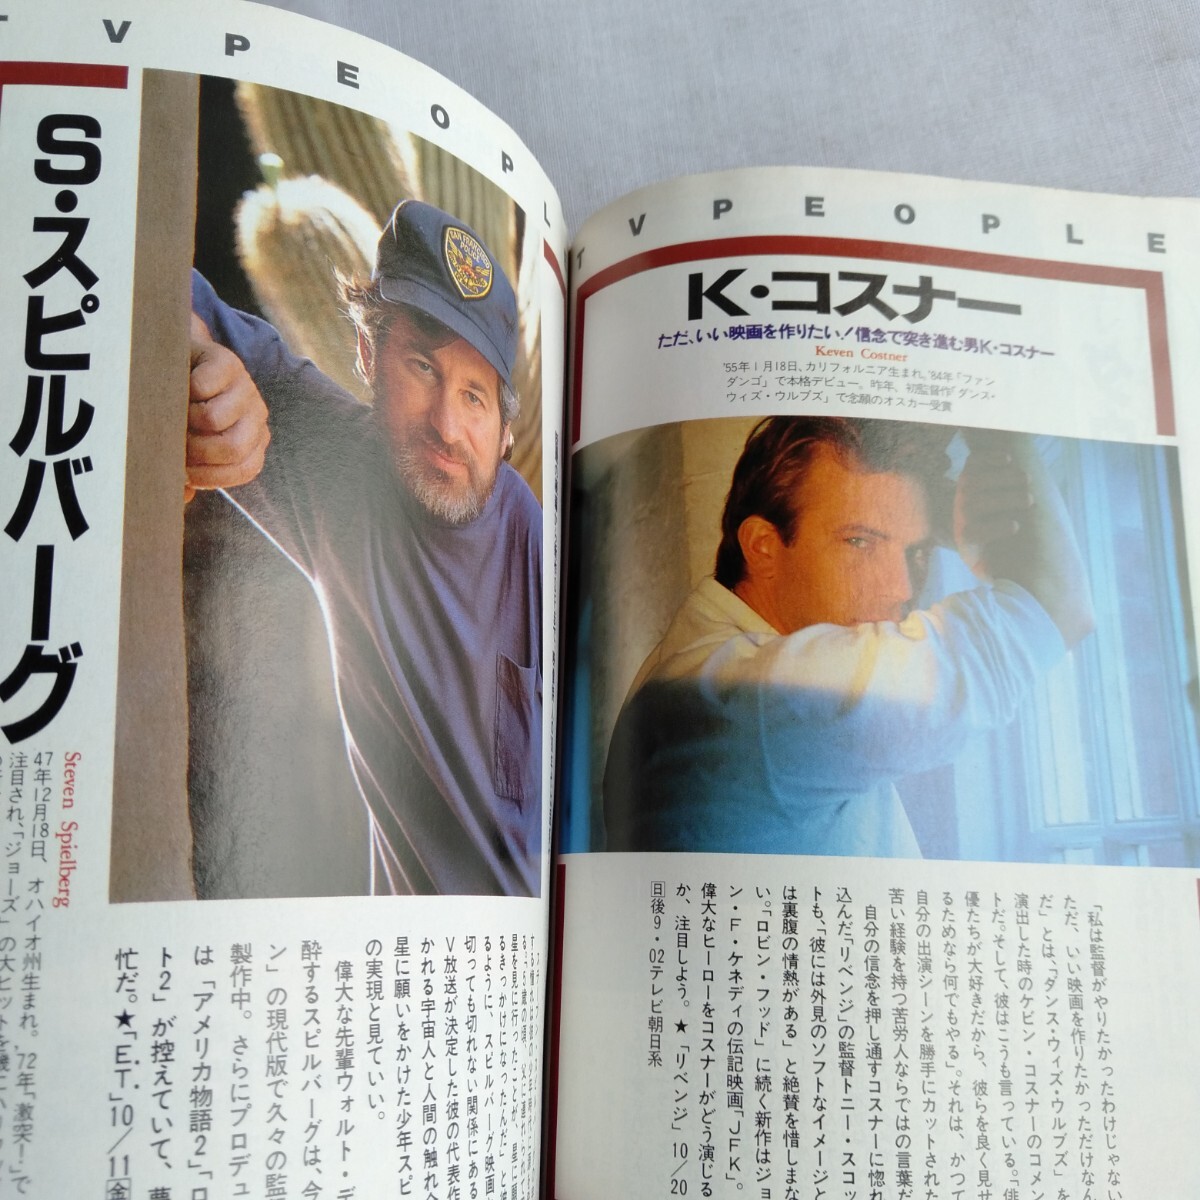 R175 Chuubu версия TV гид 1991 год 9.28~10.4 осенний новый номер комплект супер большой специальный выпуск книга@ журнал 